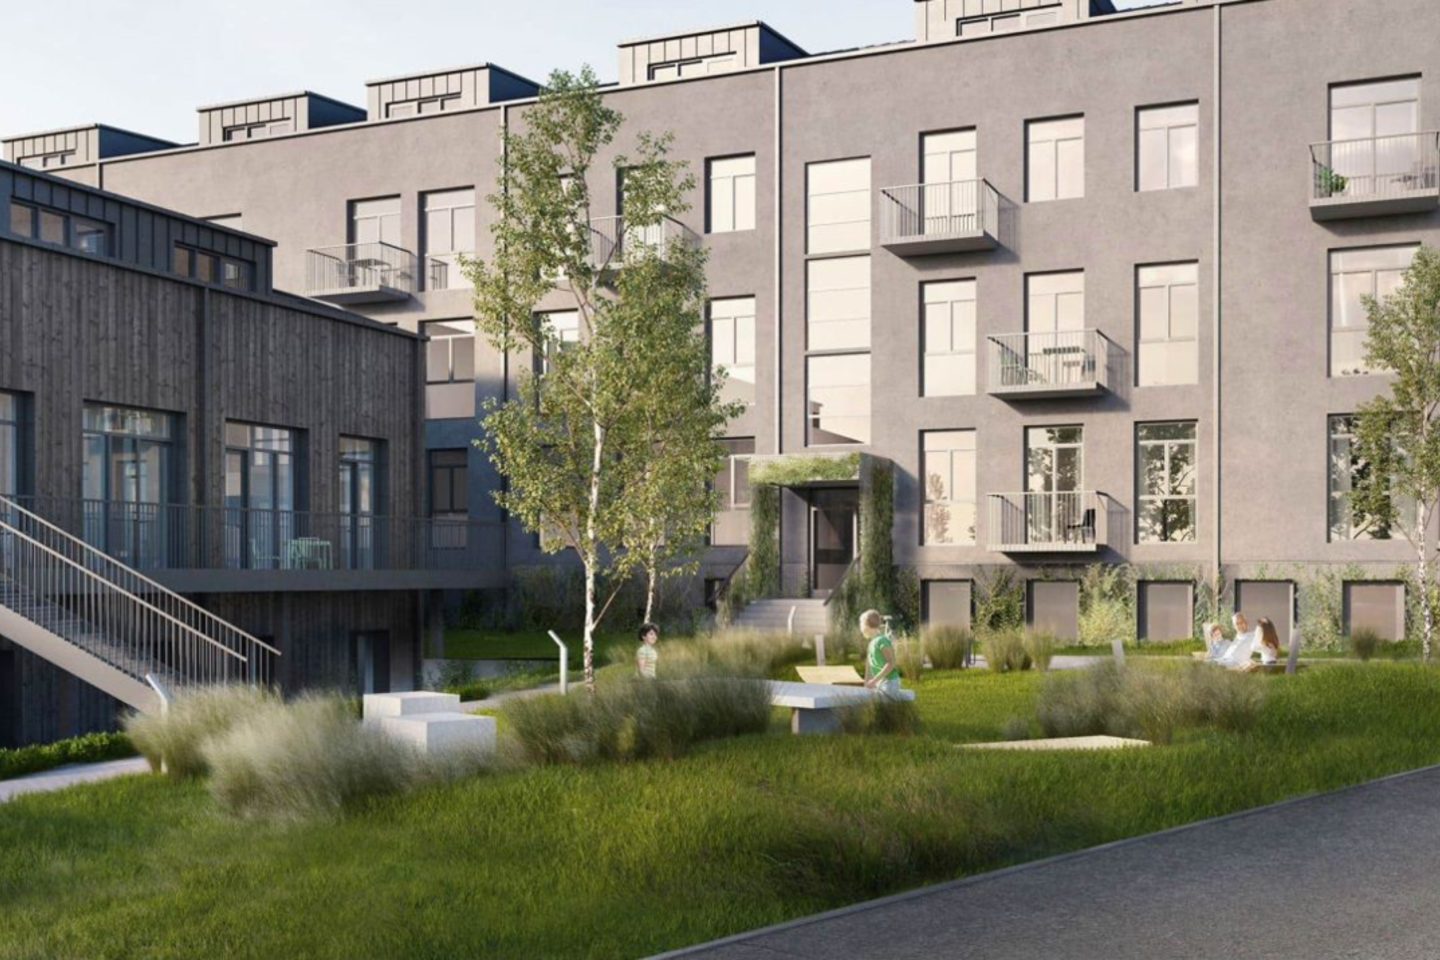 Bendrovės „Prefa“ planuojami įrengti butai bus patrauklūs, šiuolaikiški, bus sukurta moderni namo aplinka.